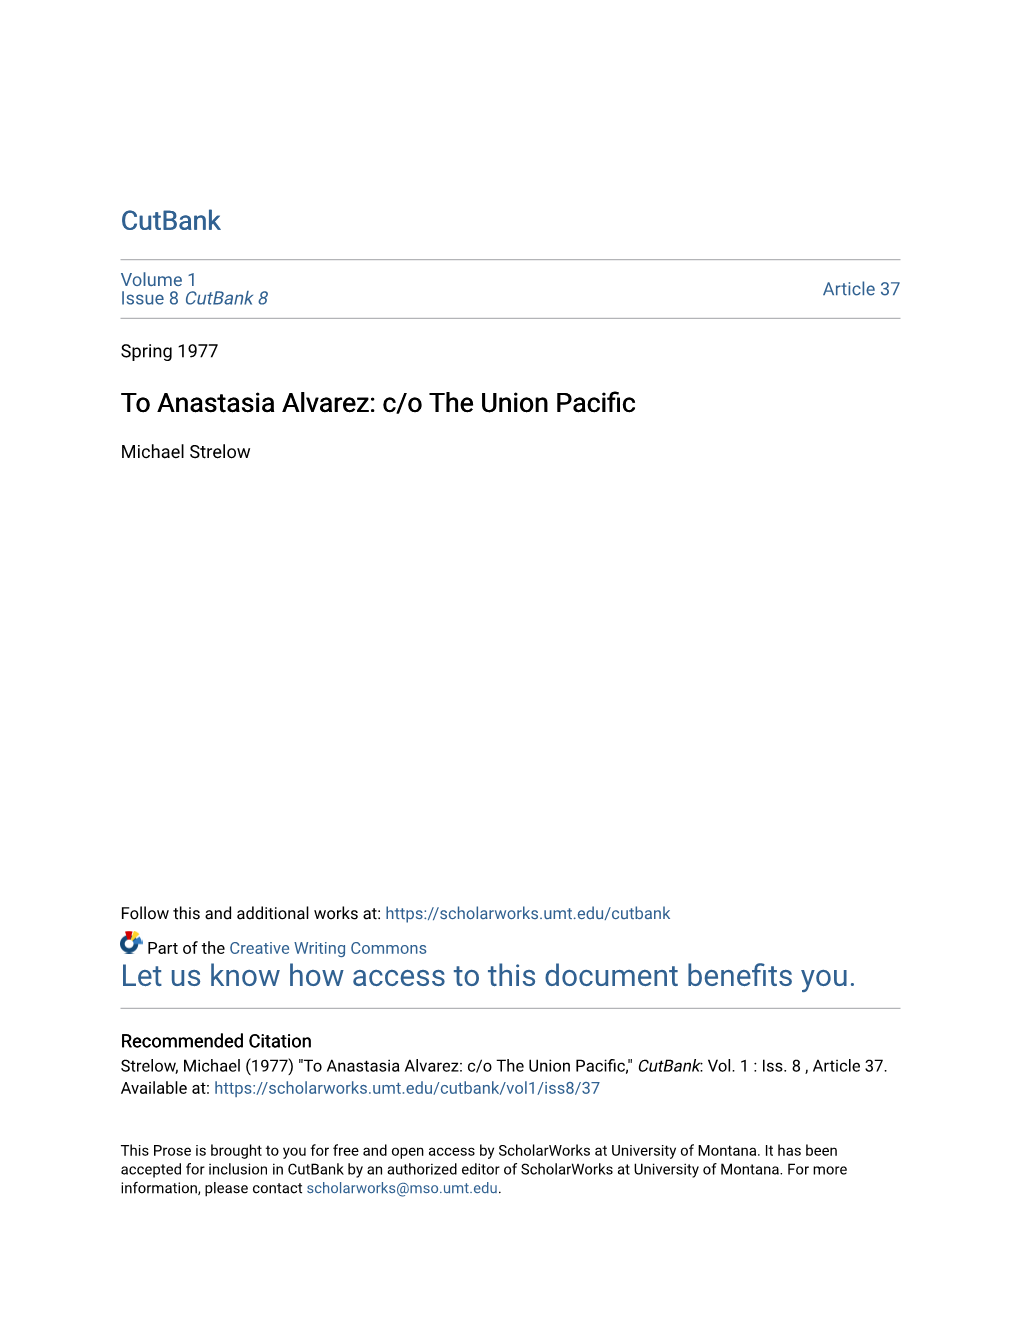 To Anastasia Alvarez: C/O the Union Pacific